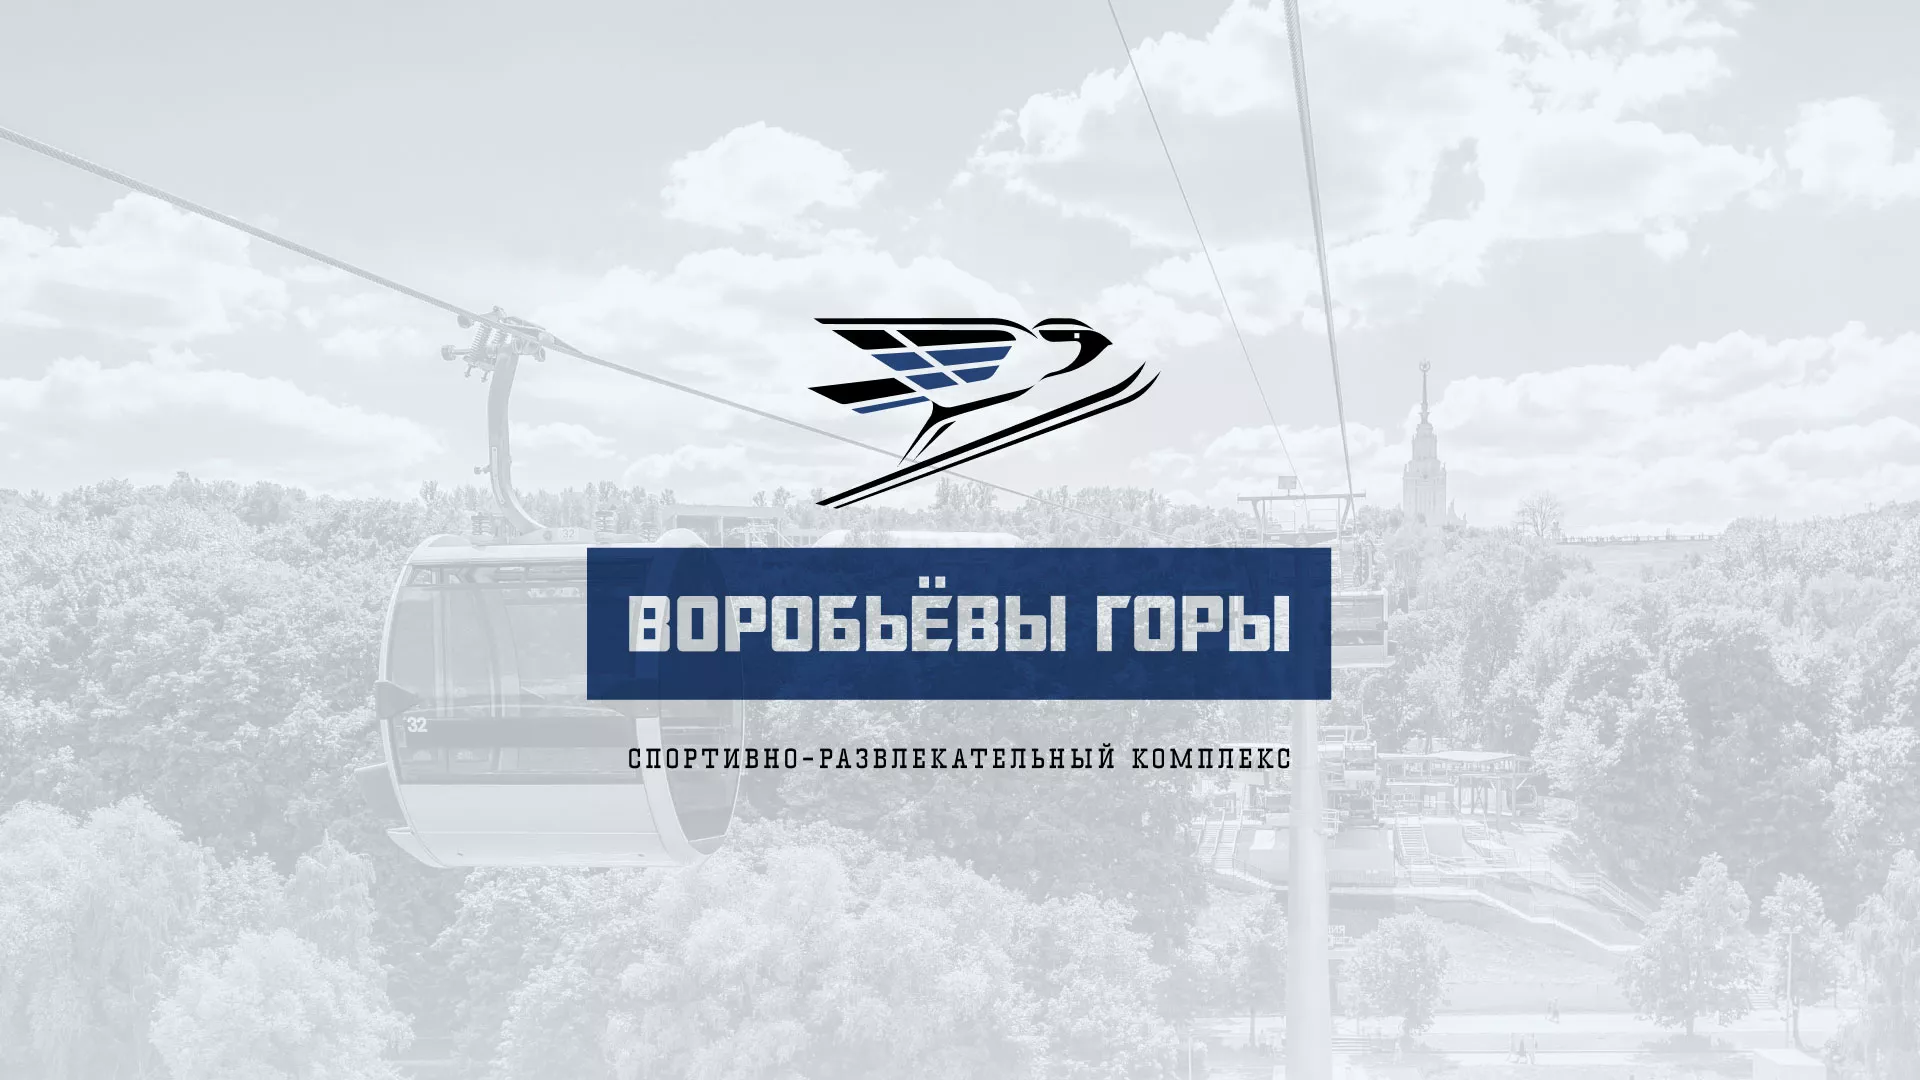 Разработка сайта в Назарово для спортивно-развлекательного комплекса «Воробьёвы горы»